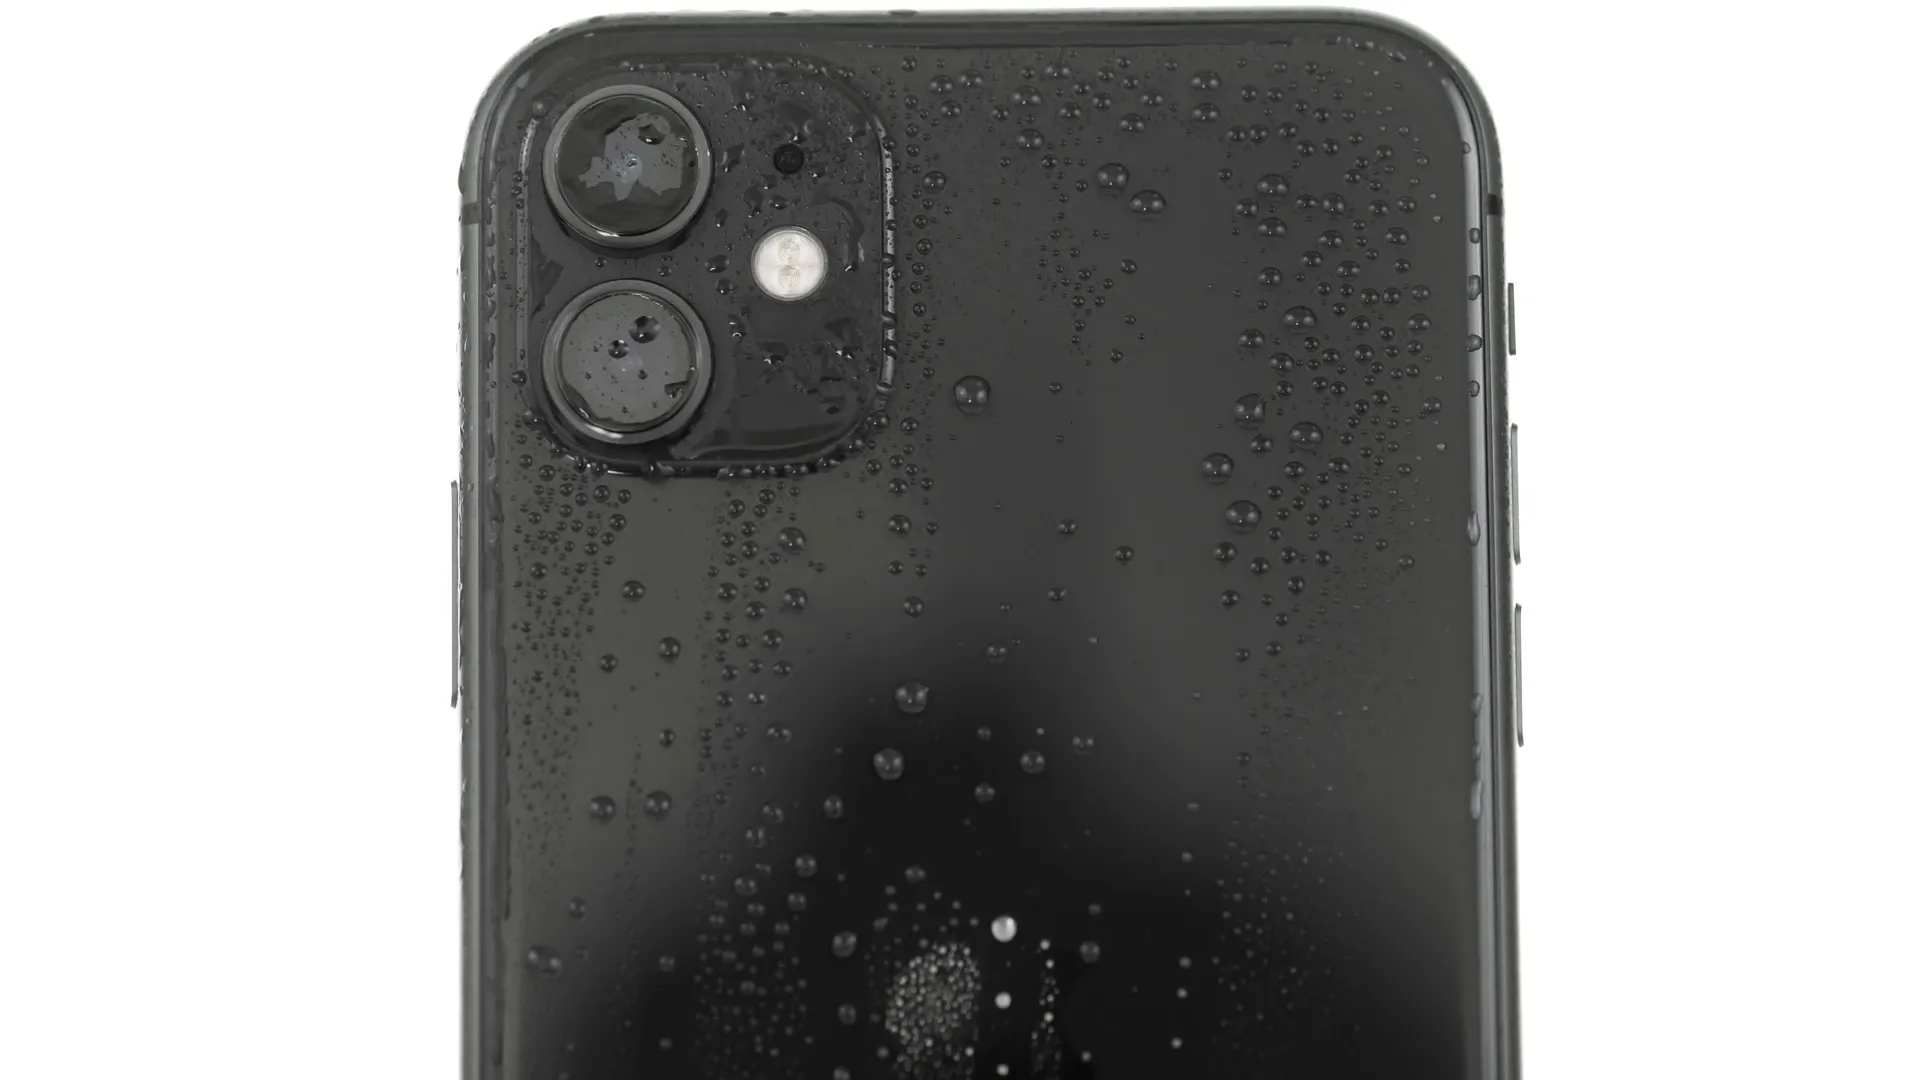 Foto do iPhone 11 molhado.